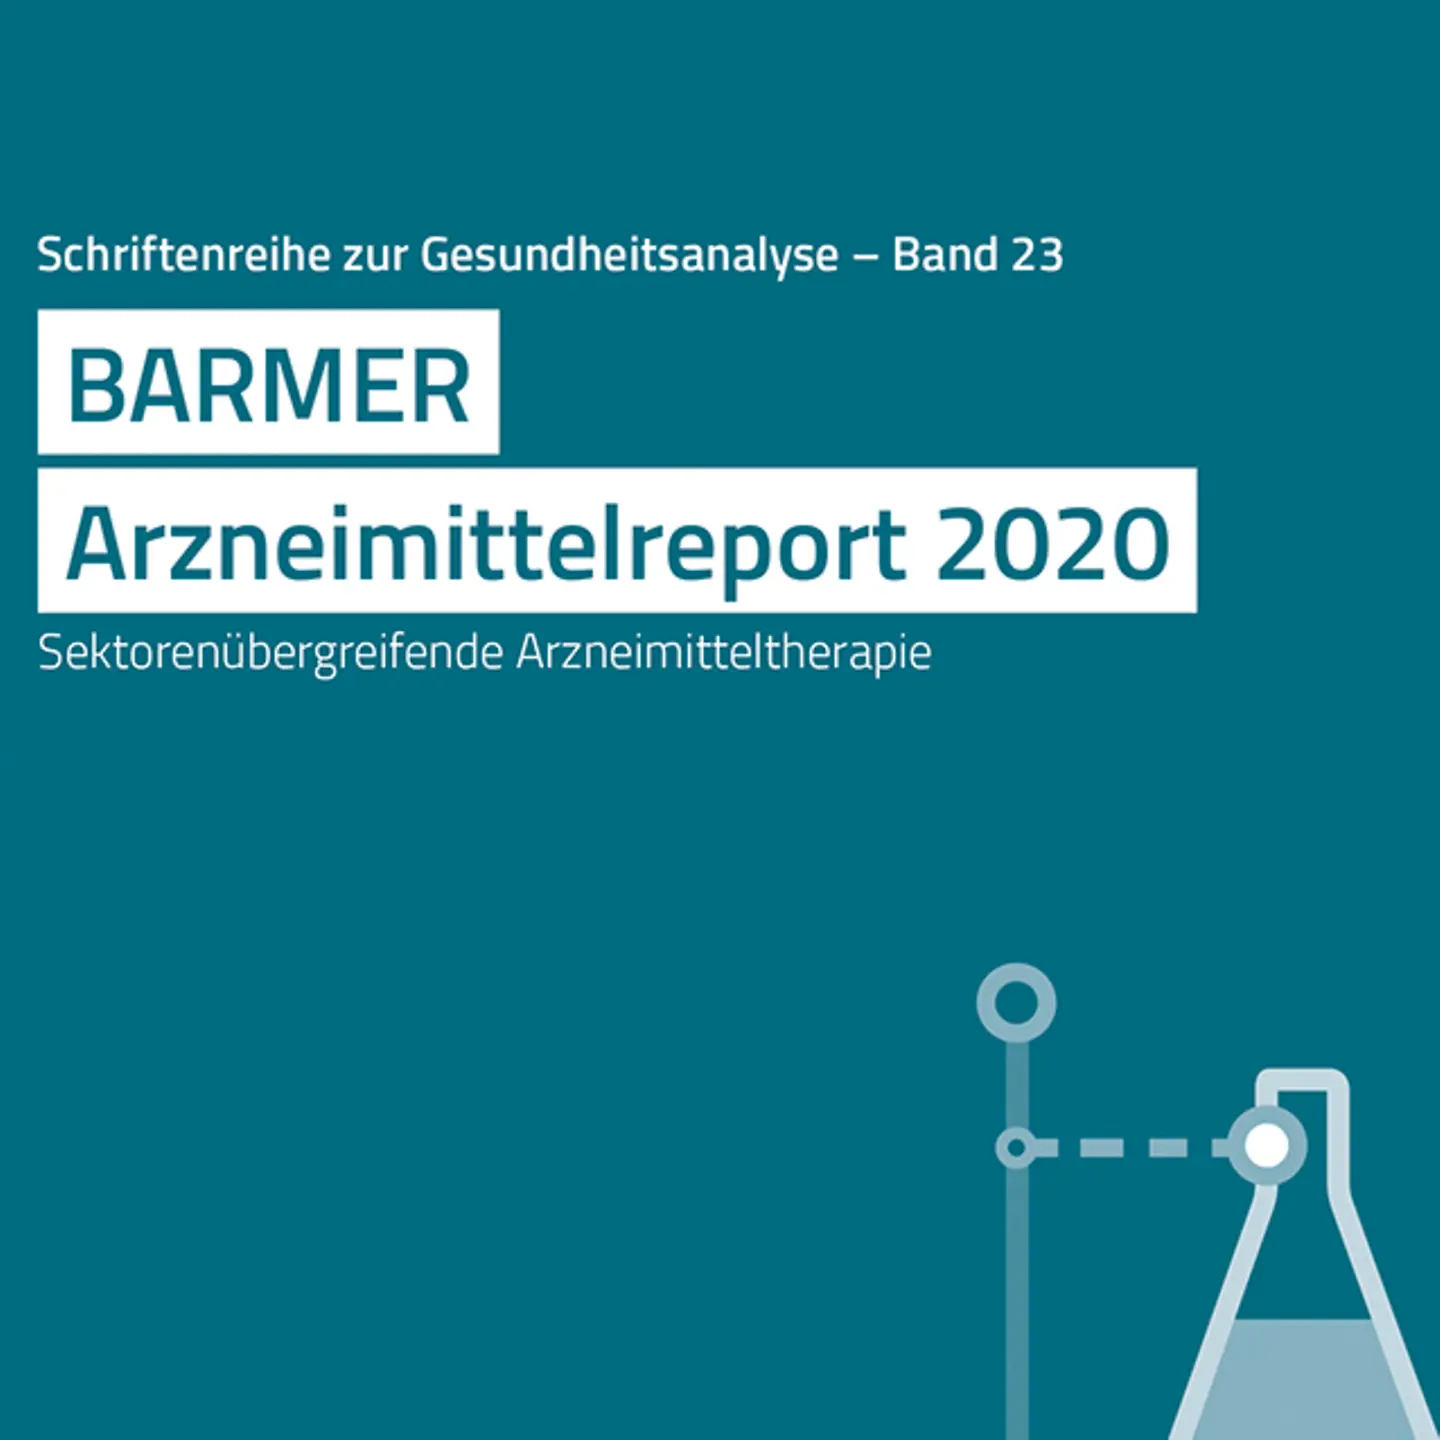 Titelbild Barmer Arzneimittelreport 2020 mit stilisiertem Reagenzglas